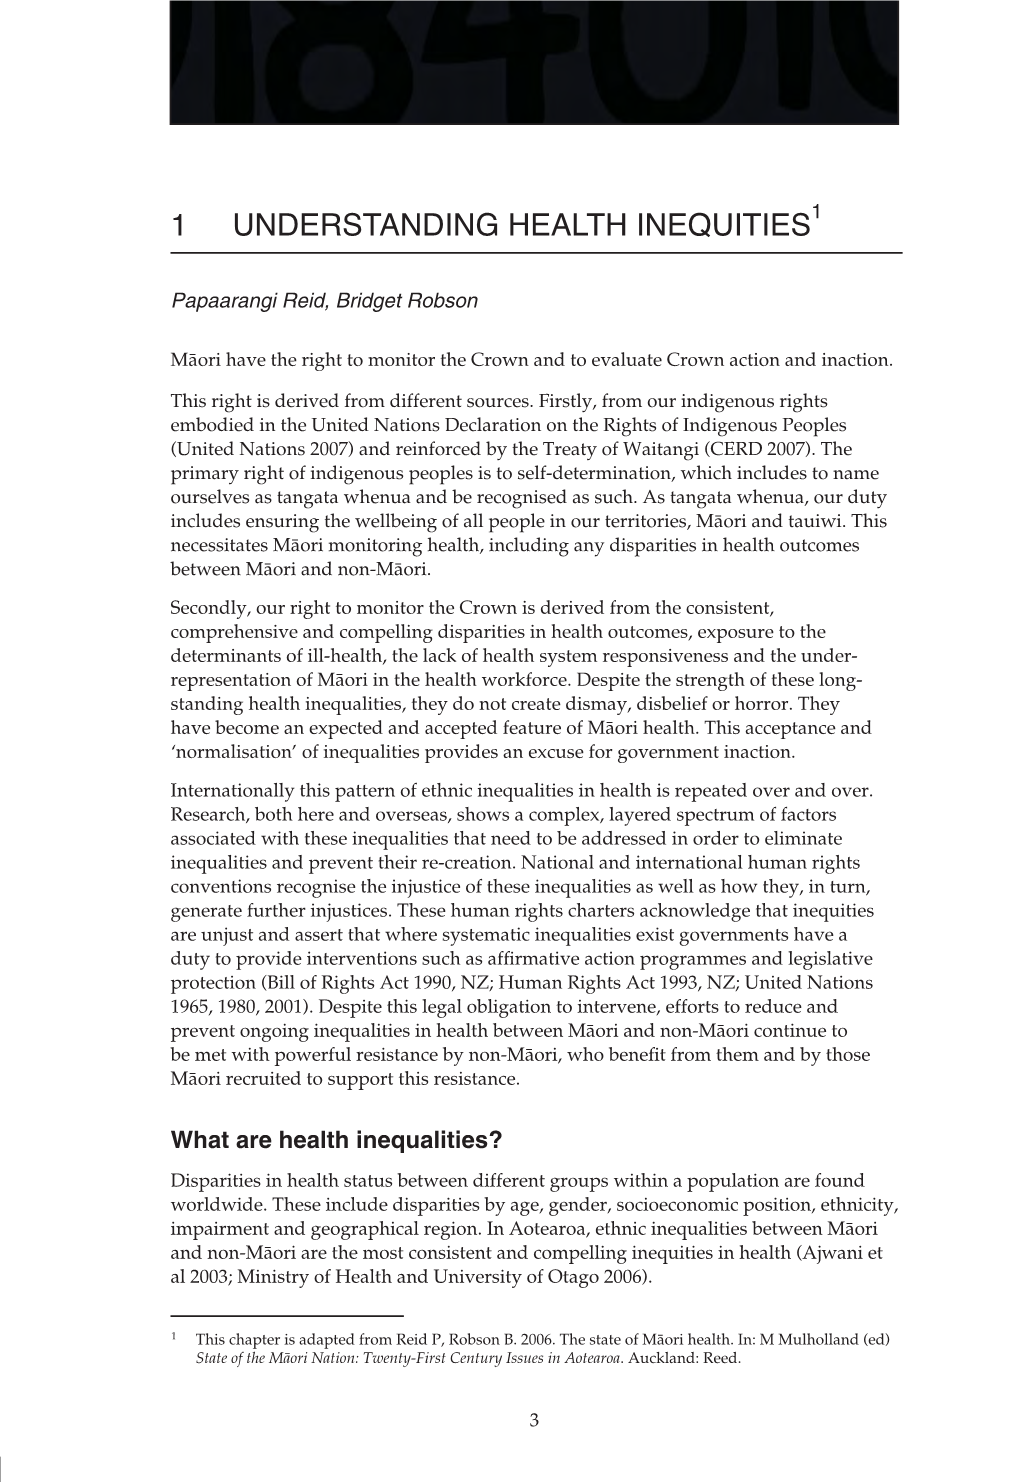 Chapter 1: Understanding Health Inequities